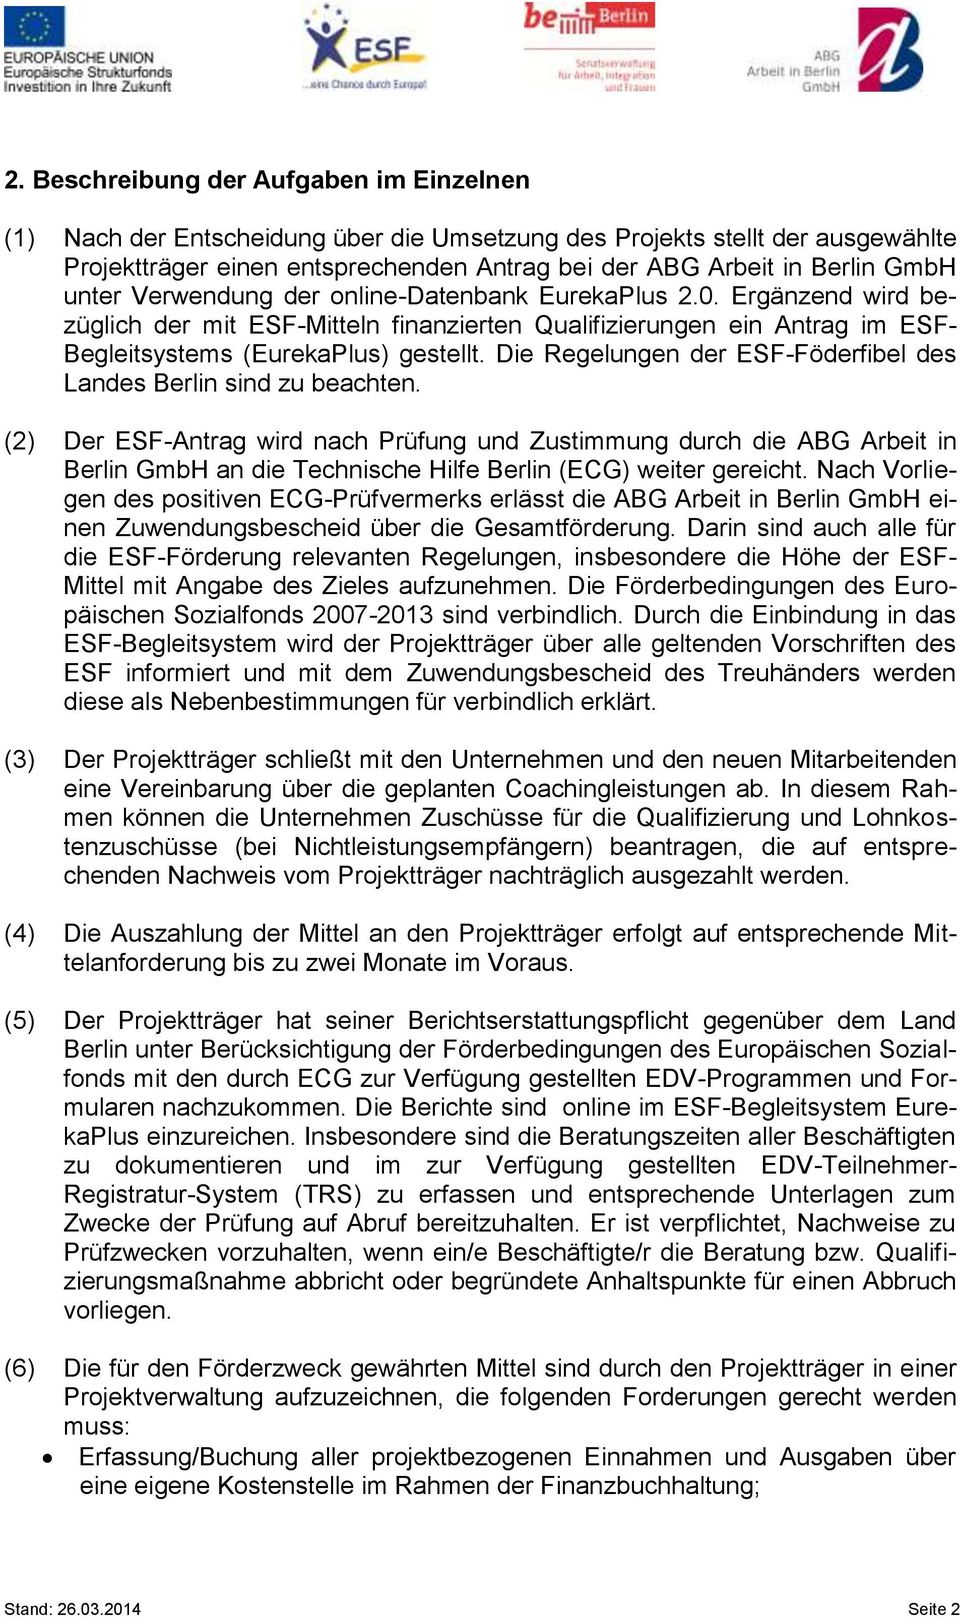 Die Regelungen der ESF-Föderfibel des Landes Berlin sind zu beachten.